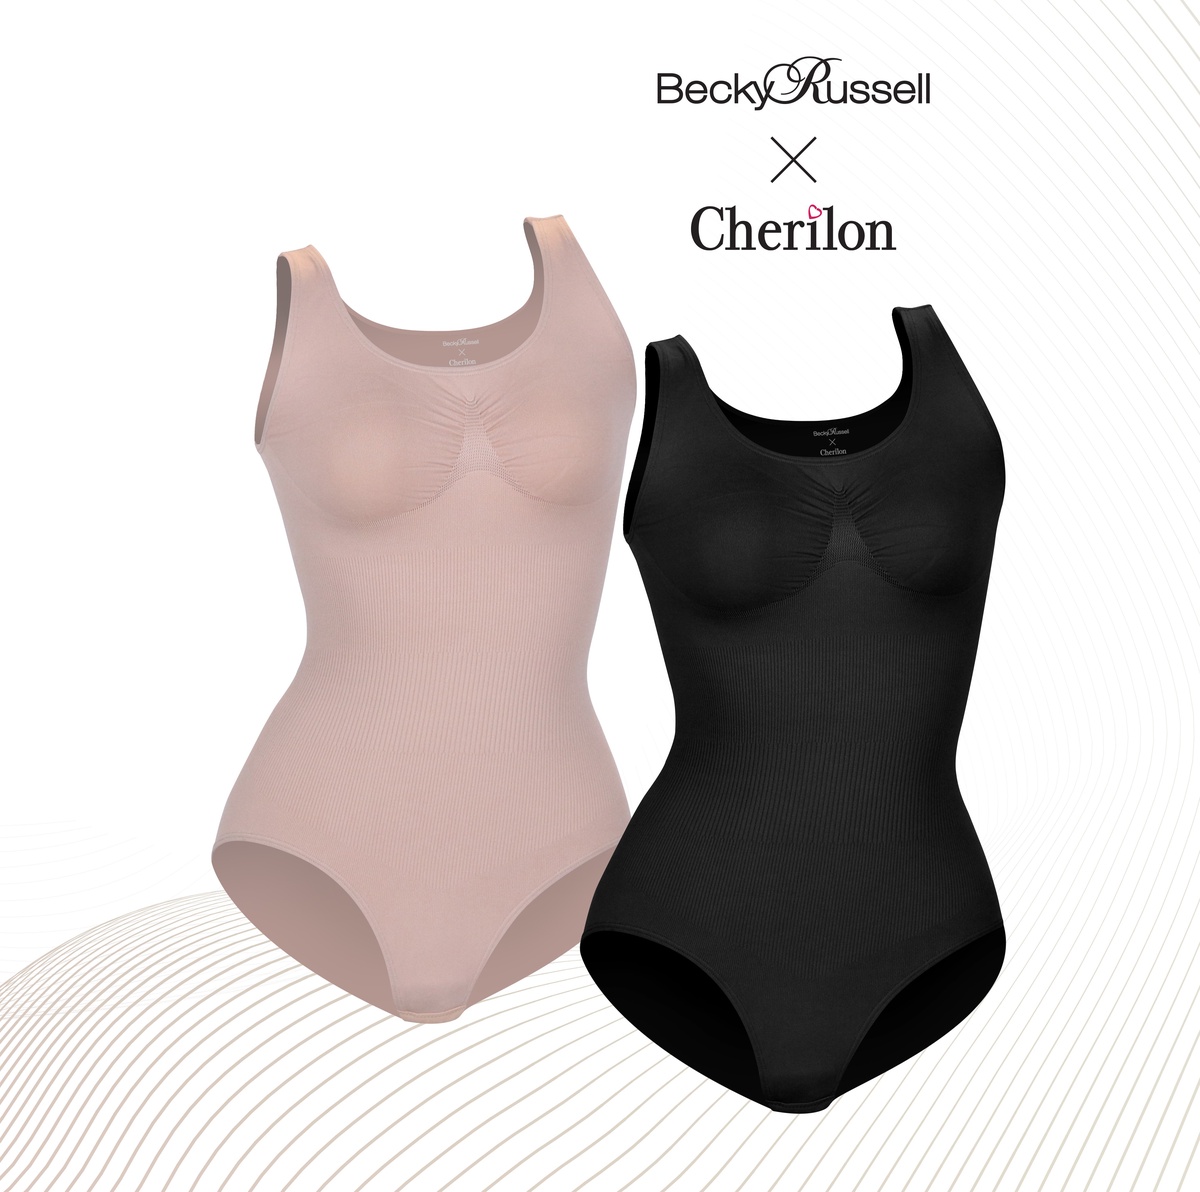 เปิดตัวชุดกระชับใส่สบาย Becky Russell X Cherilon ครั้งแรกในไทยผ่าน ช่องทีวี O Shopping